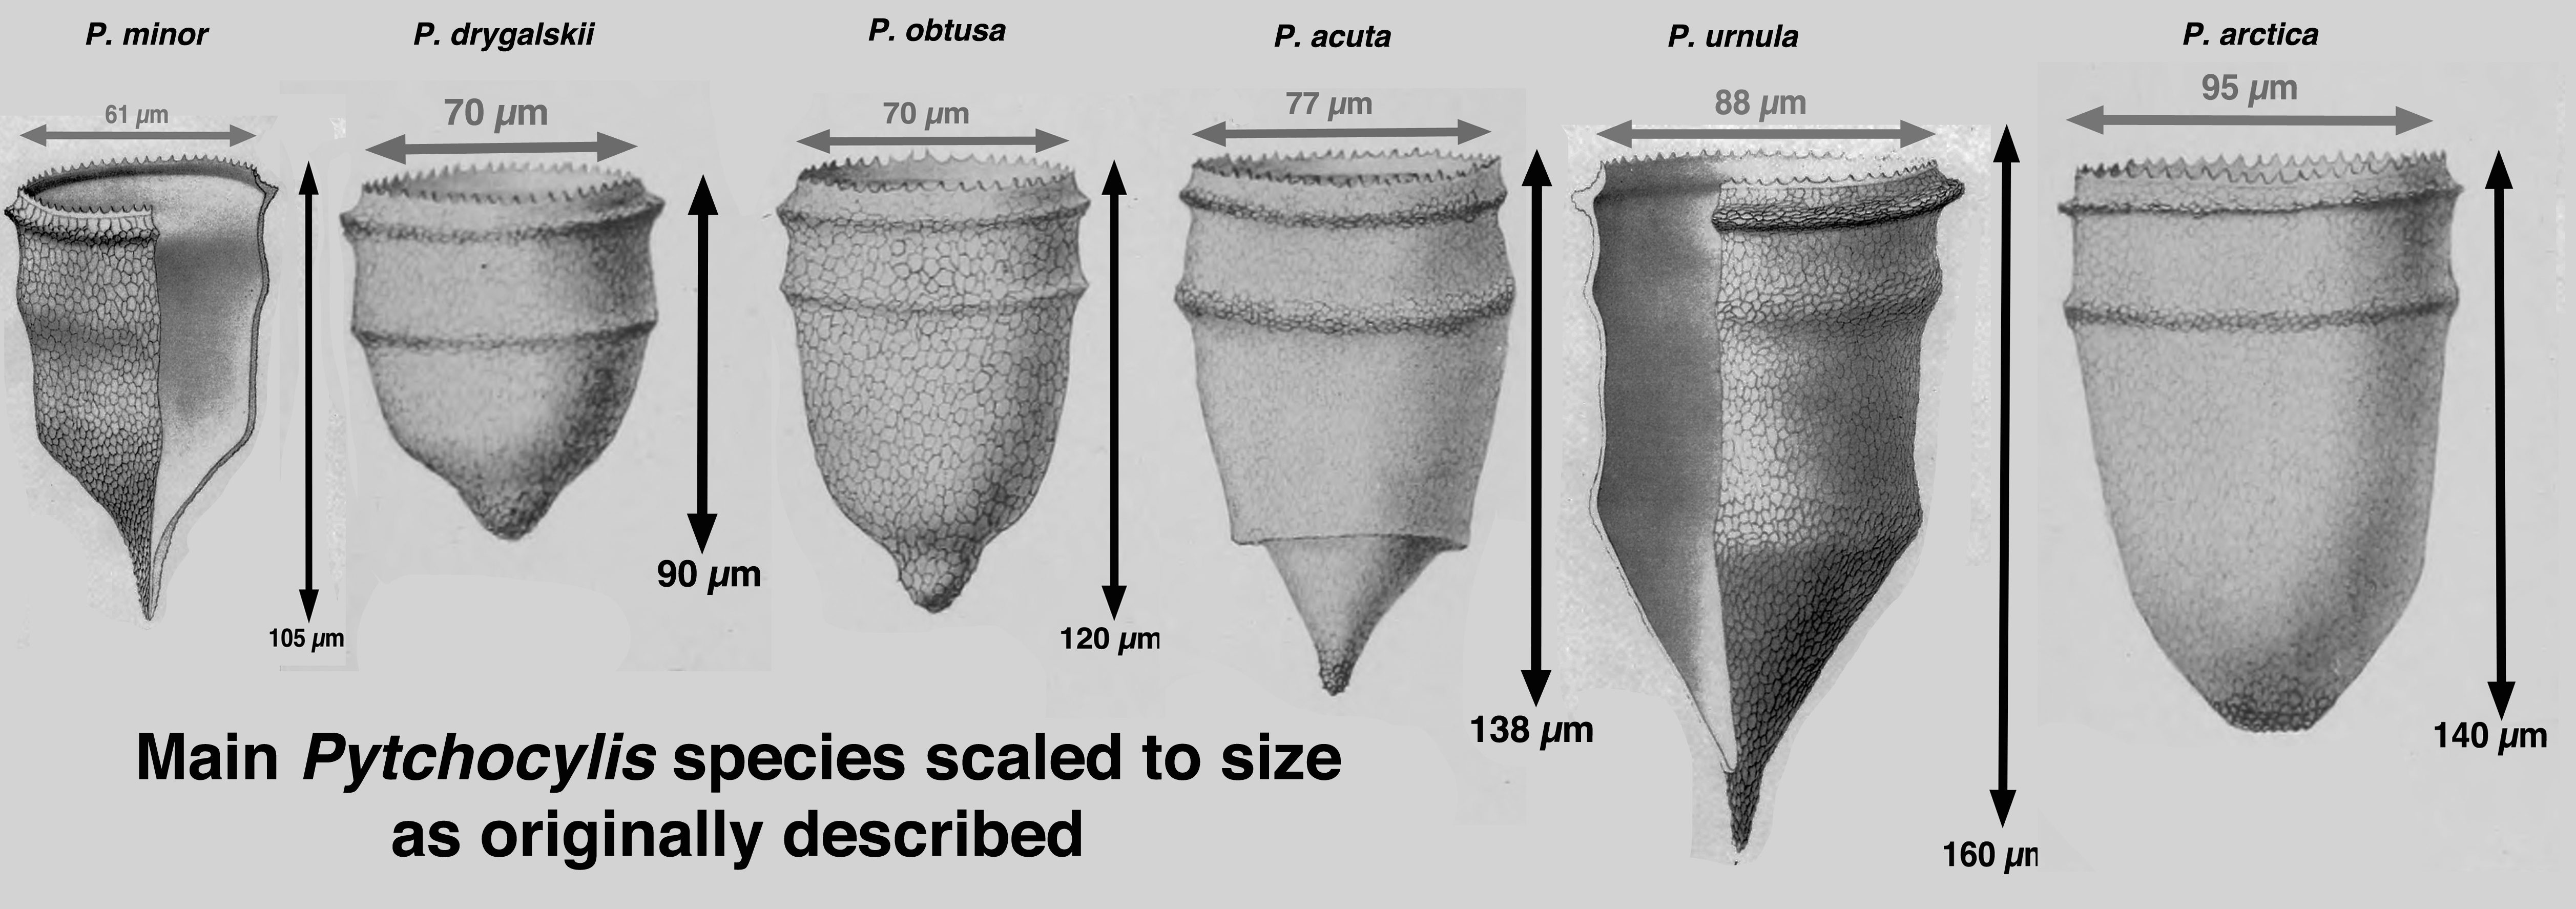 Ptychocylis species correctly sized